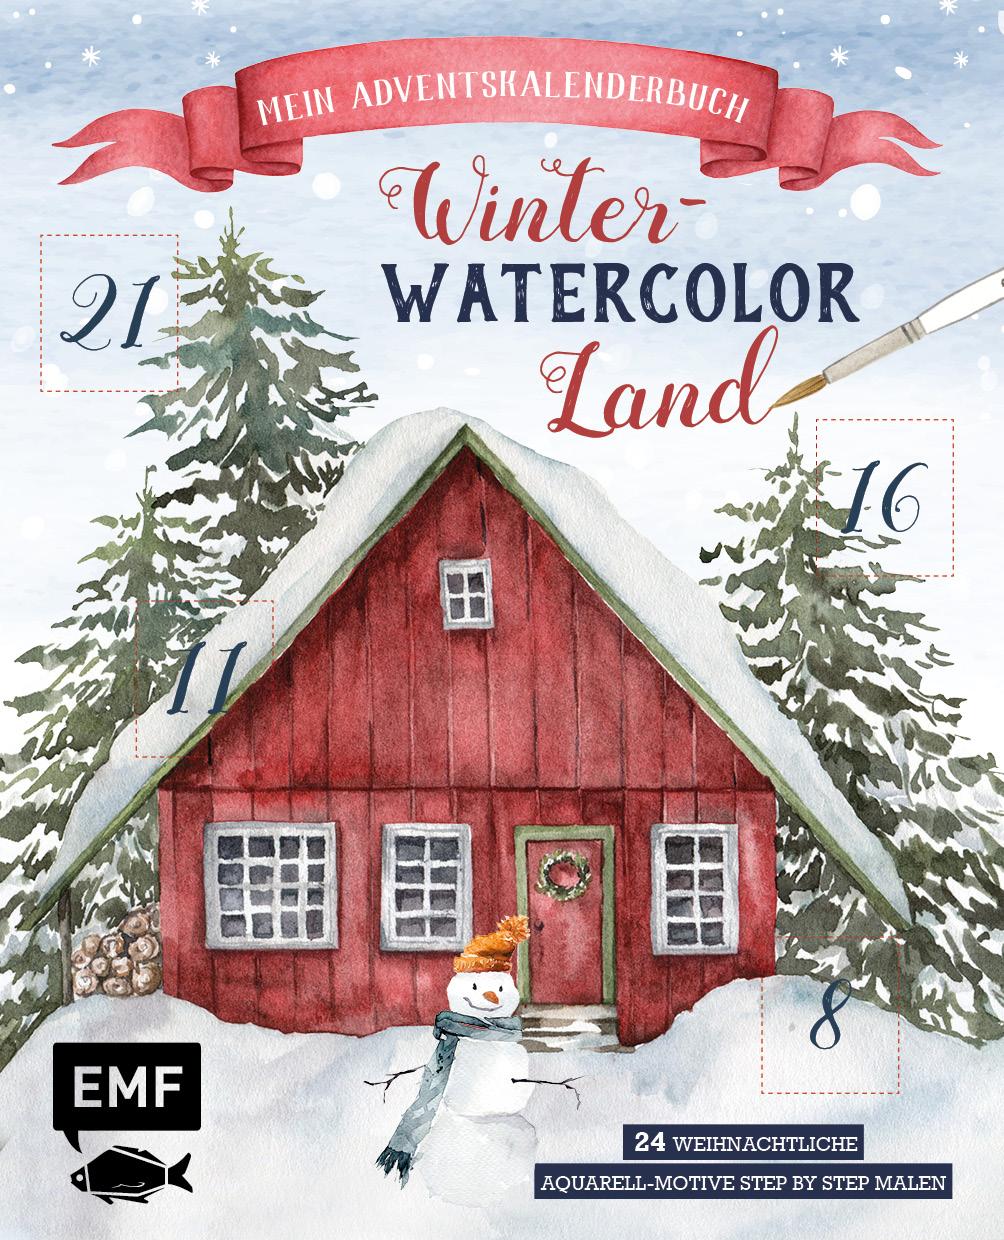 Kniha Mein Adventskalender-Buch: Winter-Watercolor-Land 